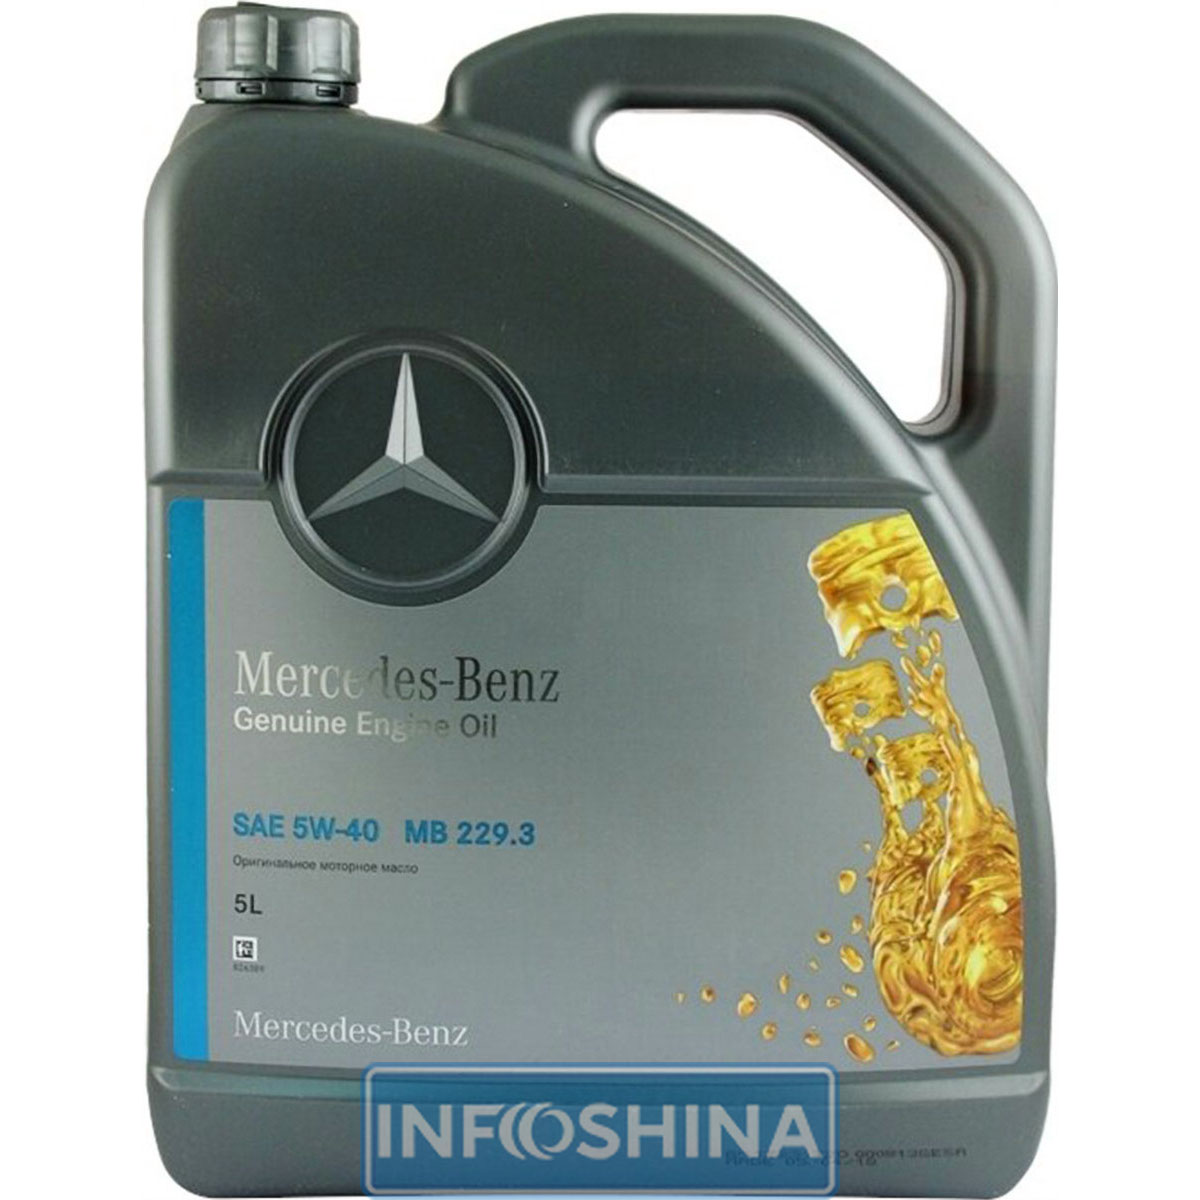 Купить масло Mercedes-Benz MB 229.3 5W-40 (5л)